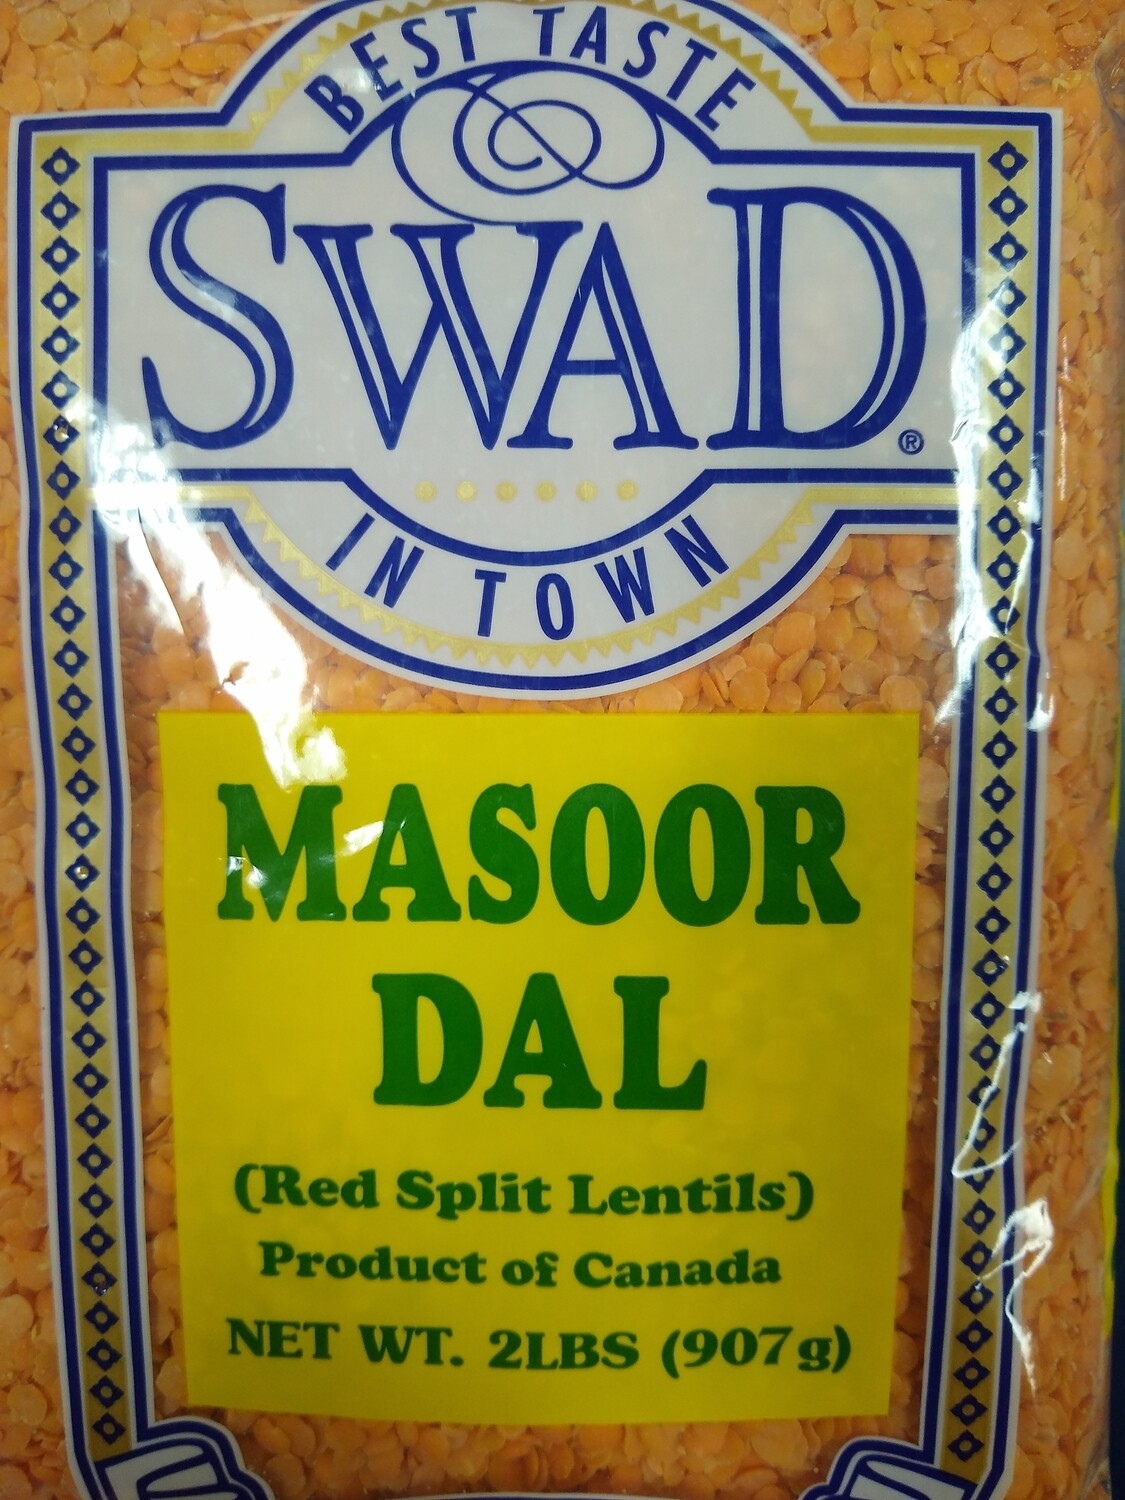 Swad Masoor Dal 2Lb